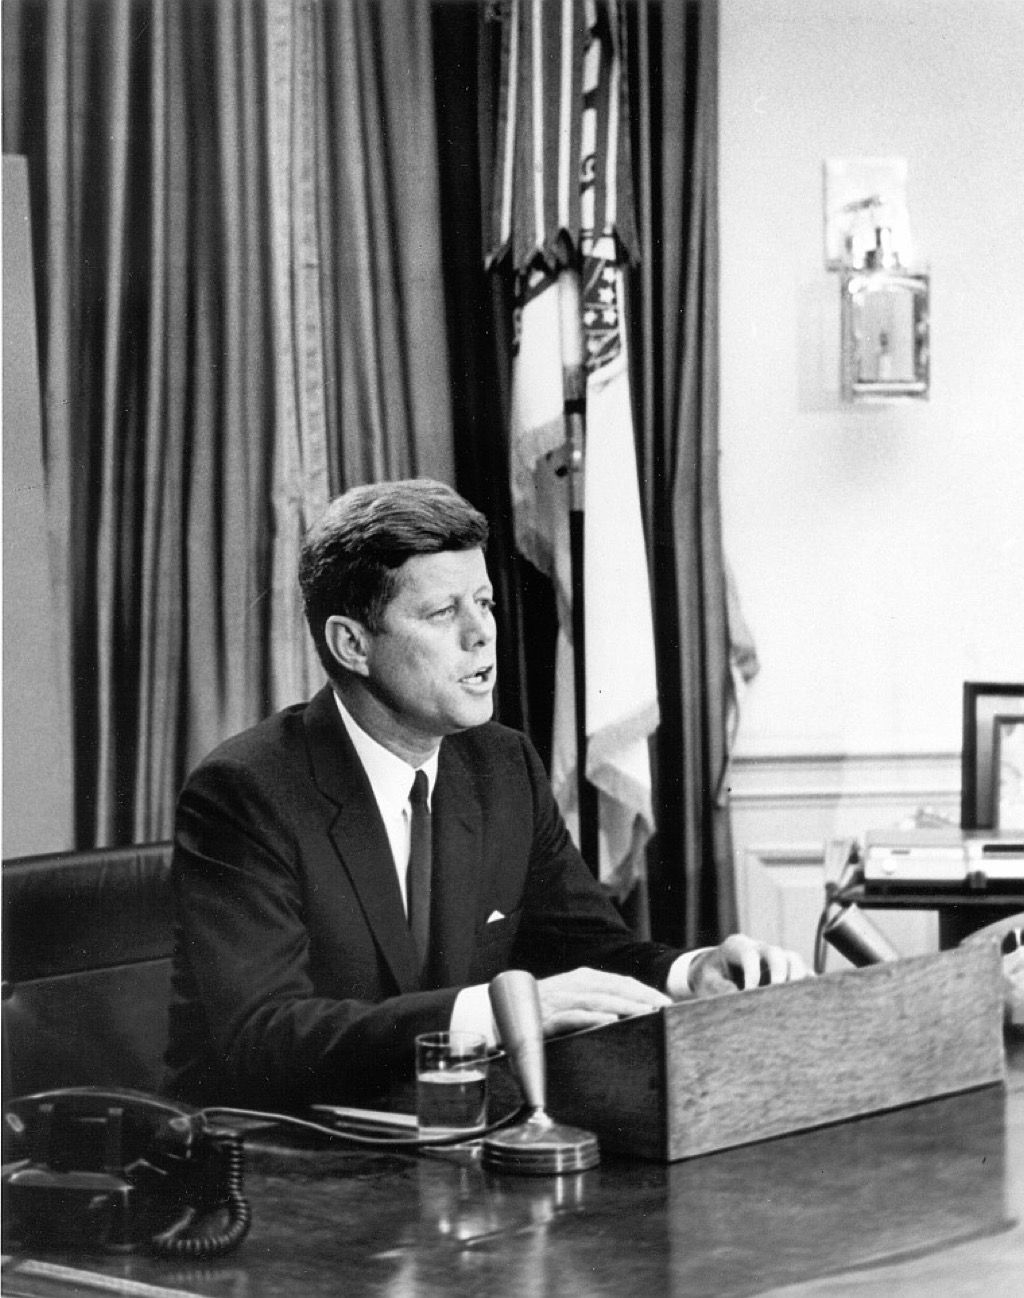 John F. Kennedy hetaste kändis året du föddes